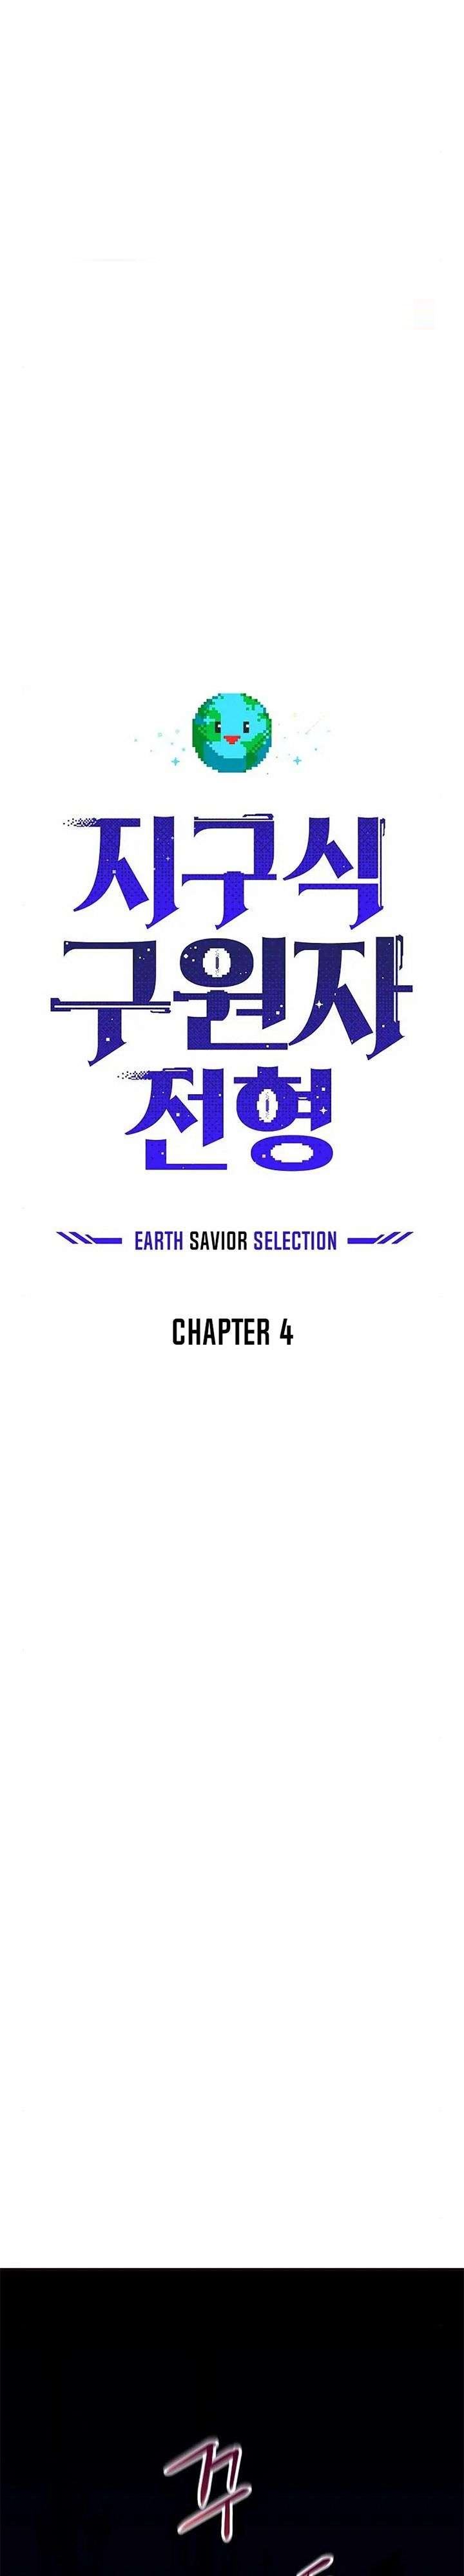 The Earth Savior Selection Chapter 4